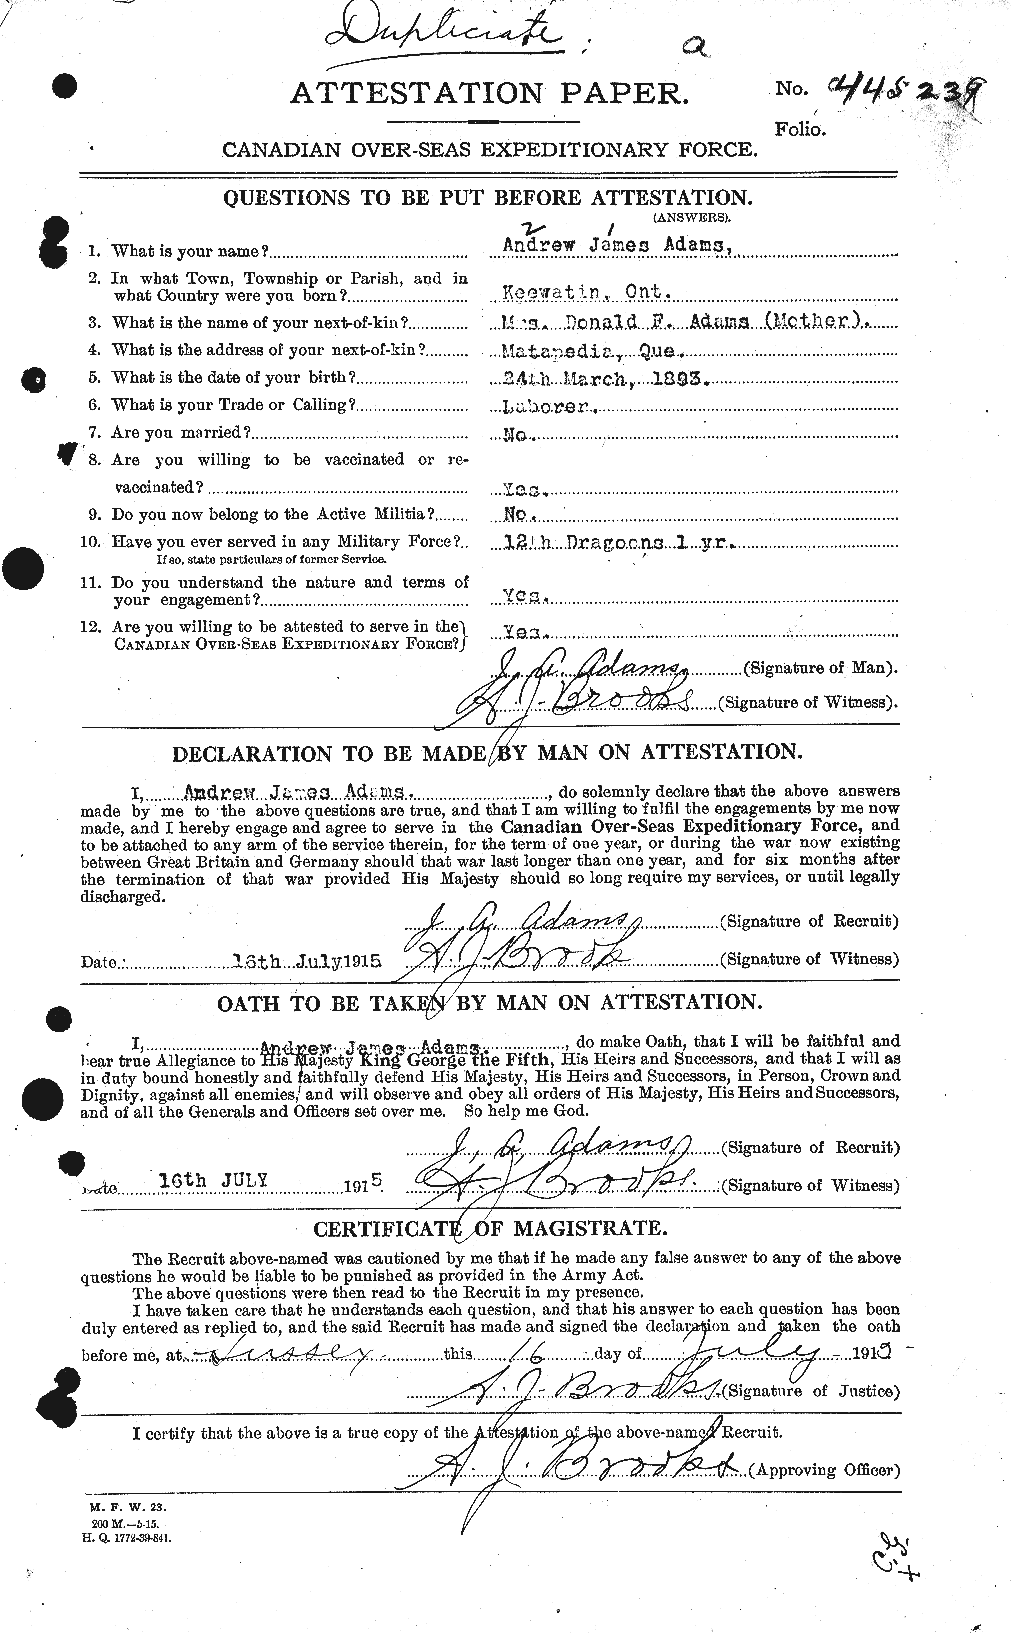 Dossiers du Personnel de la Première Guerre mondiale - CEC 203247a